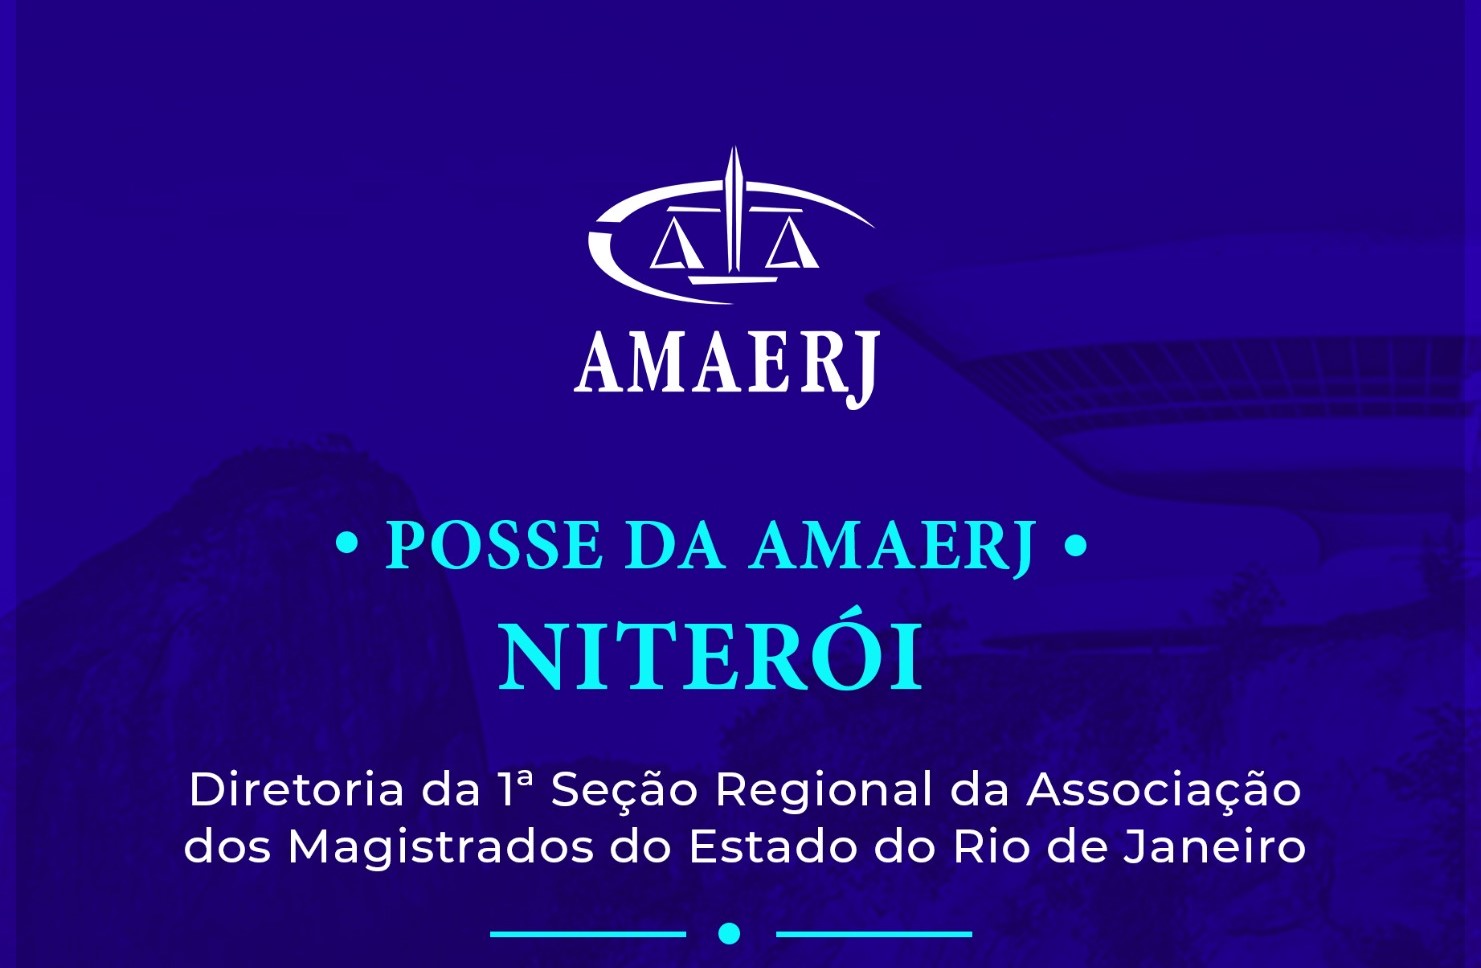 Dirigentes da Regional da AMAERJ em Niterói tomarão posse nesta quinta-feira